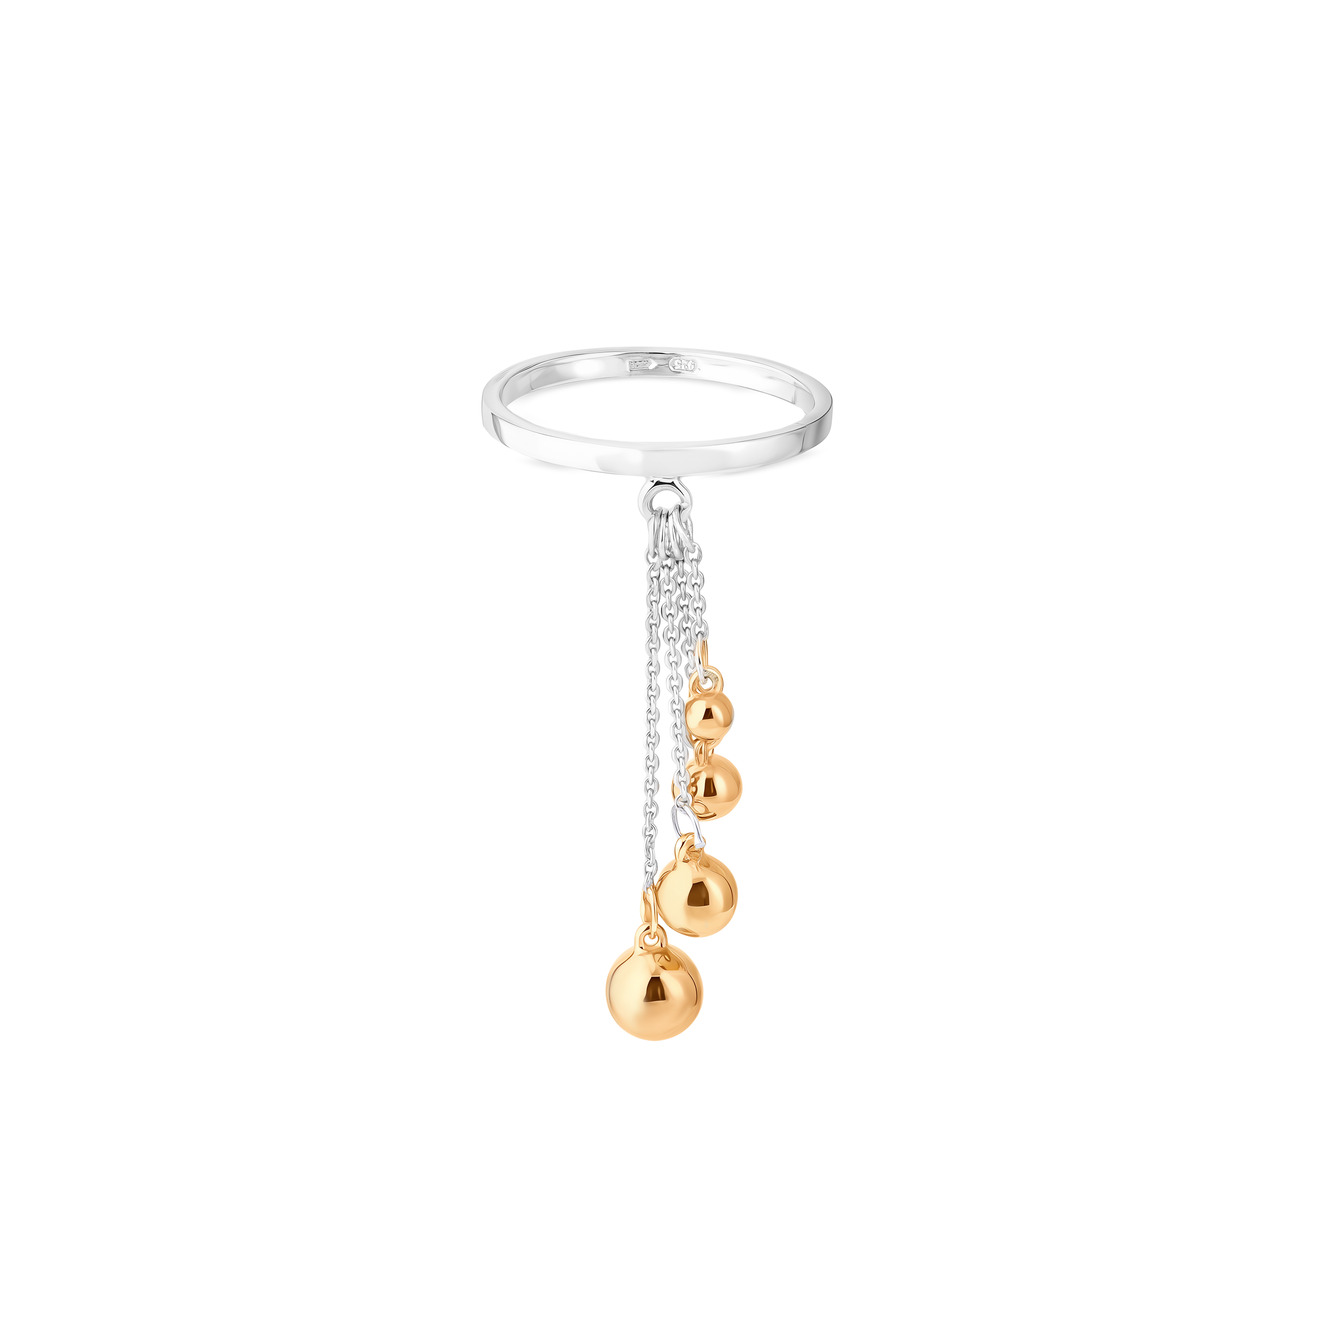 ура jewelry кольцо из серебра с жемчугом УРА jewelry Кольцо из серебра с позолоченными шариками на цепочке